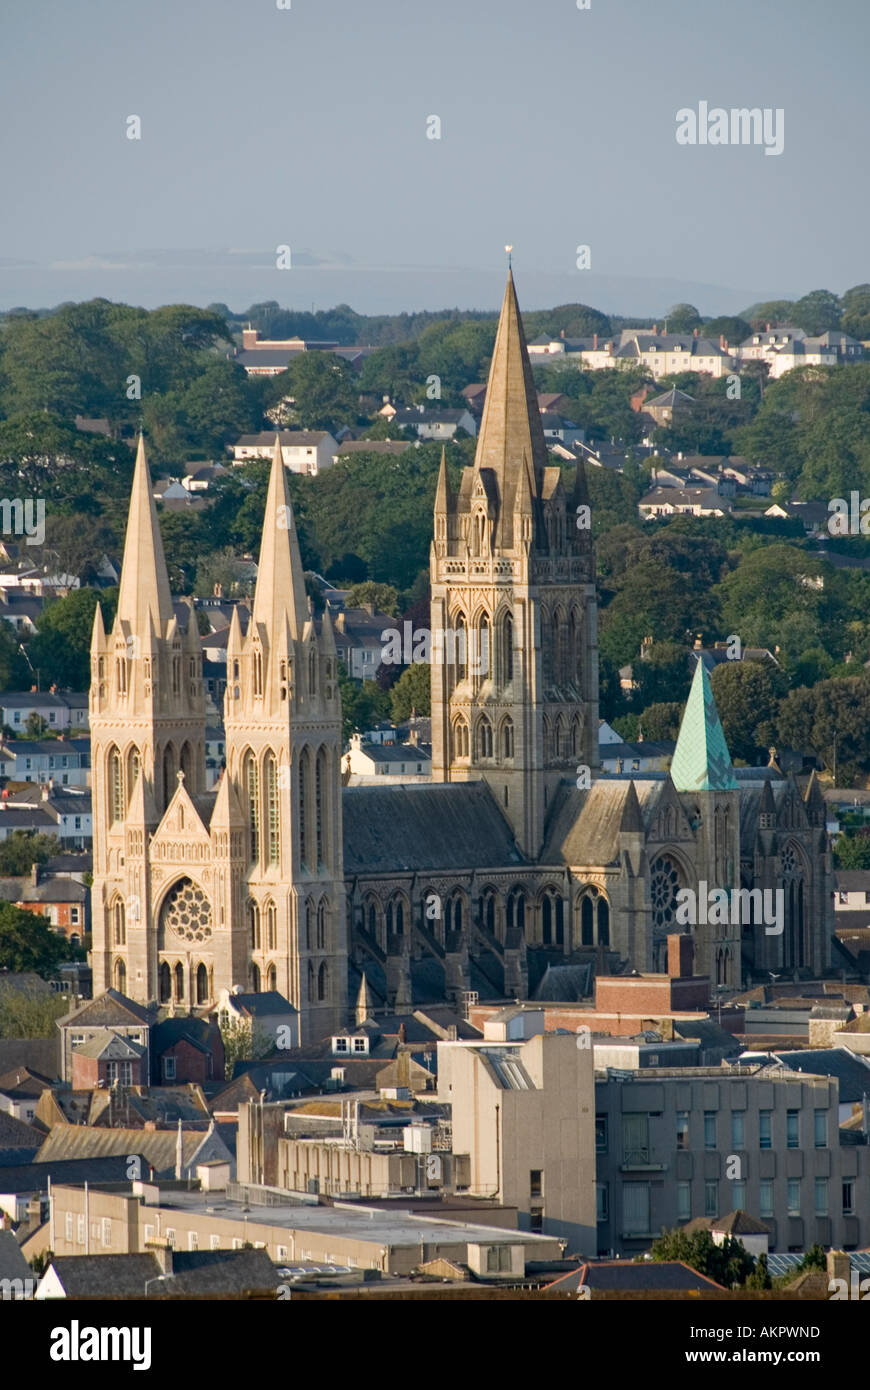 Blick auf die sonnige urbane Landschaft mit Blick auf die im gotischen Stil wiederbelebte Architektur der Spires und den Turm der historischen Kathedrale der Stadt Truro in Cornwall, England Stockfoto